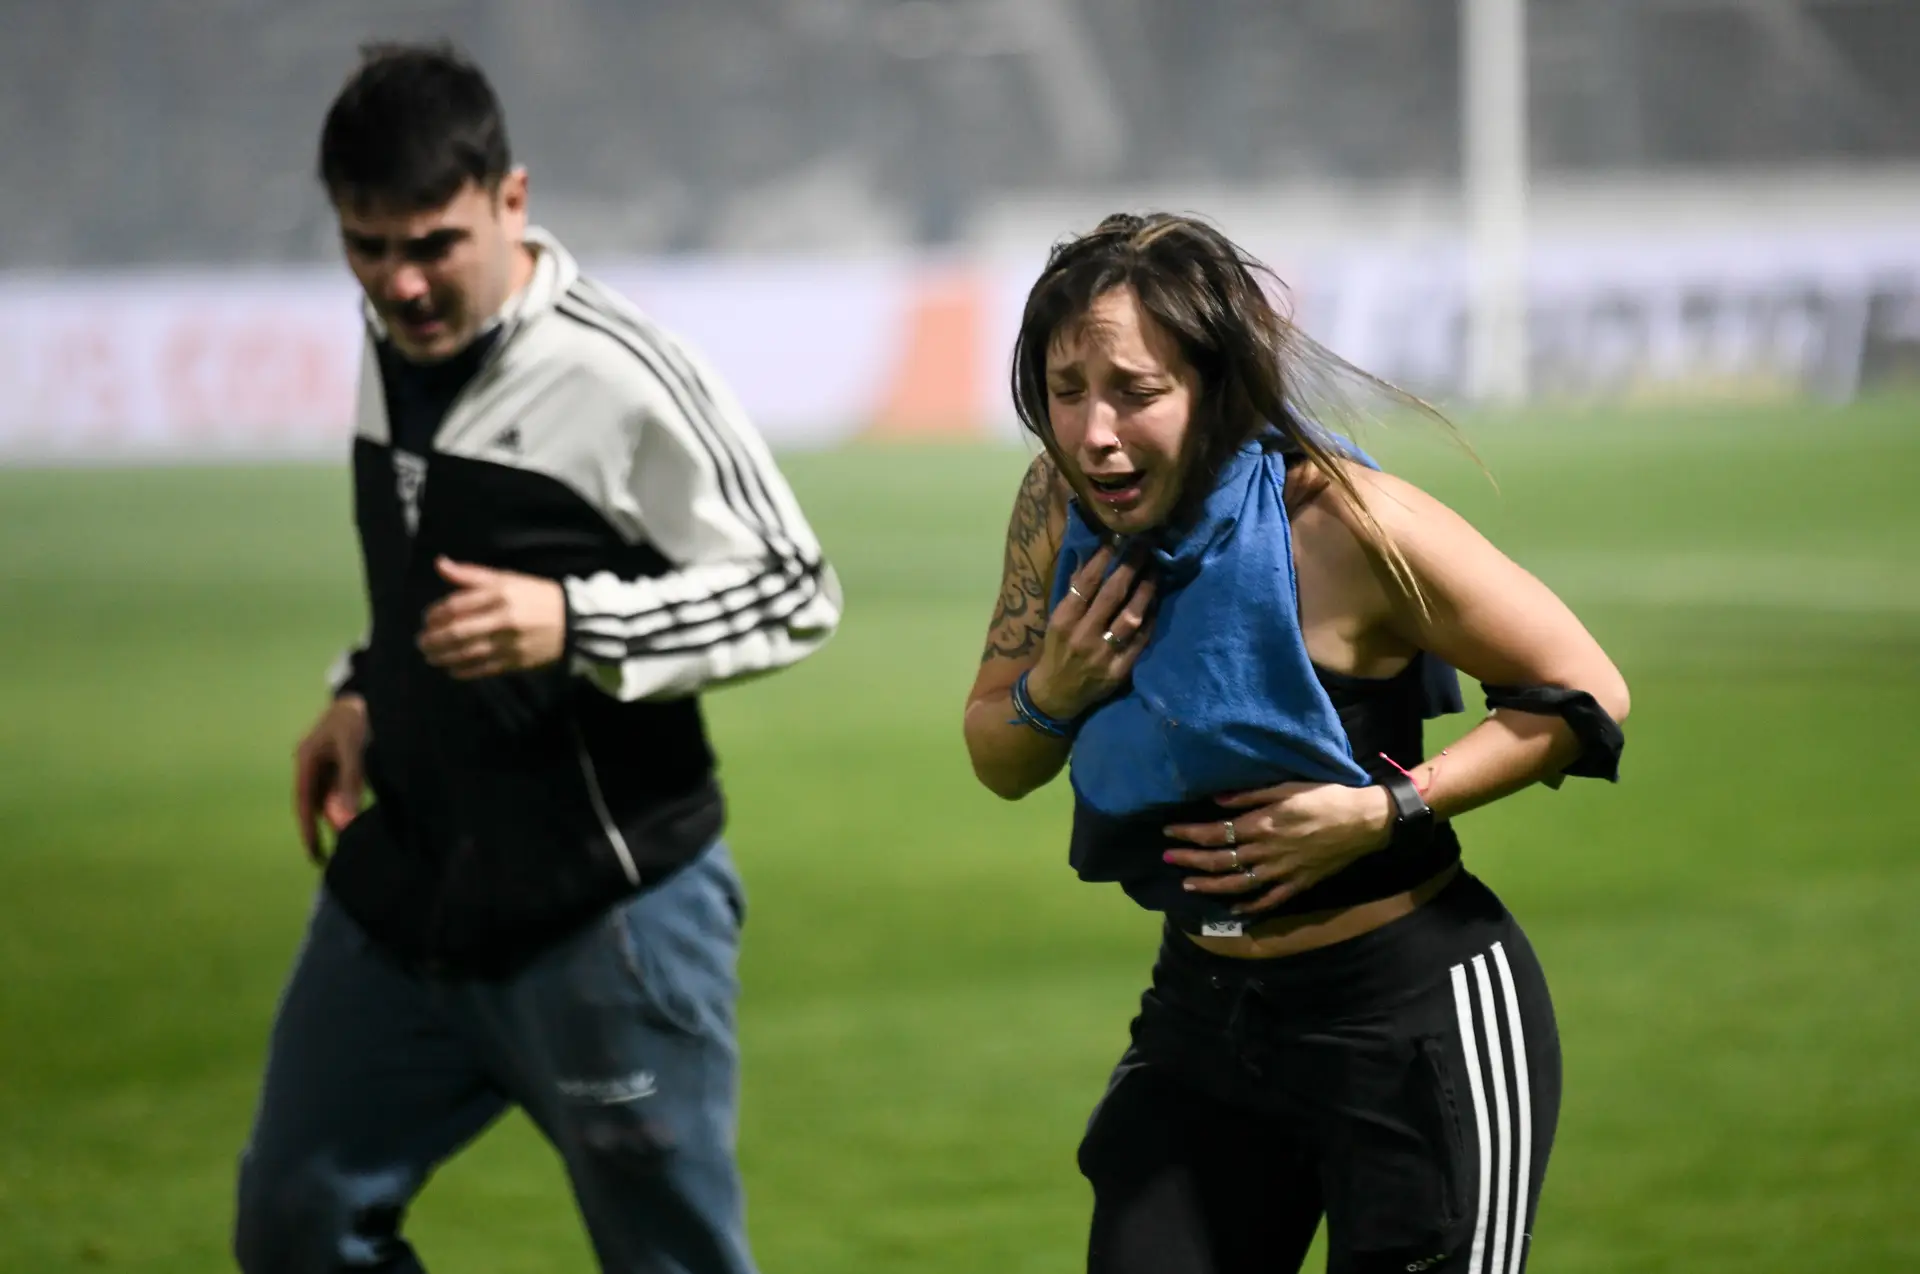 Adepto morre em confrontos durante jogo na Argentina